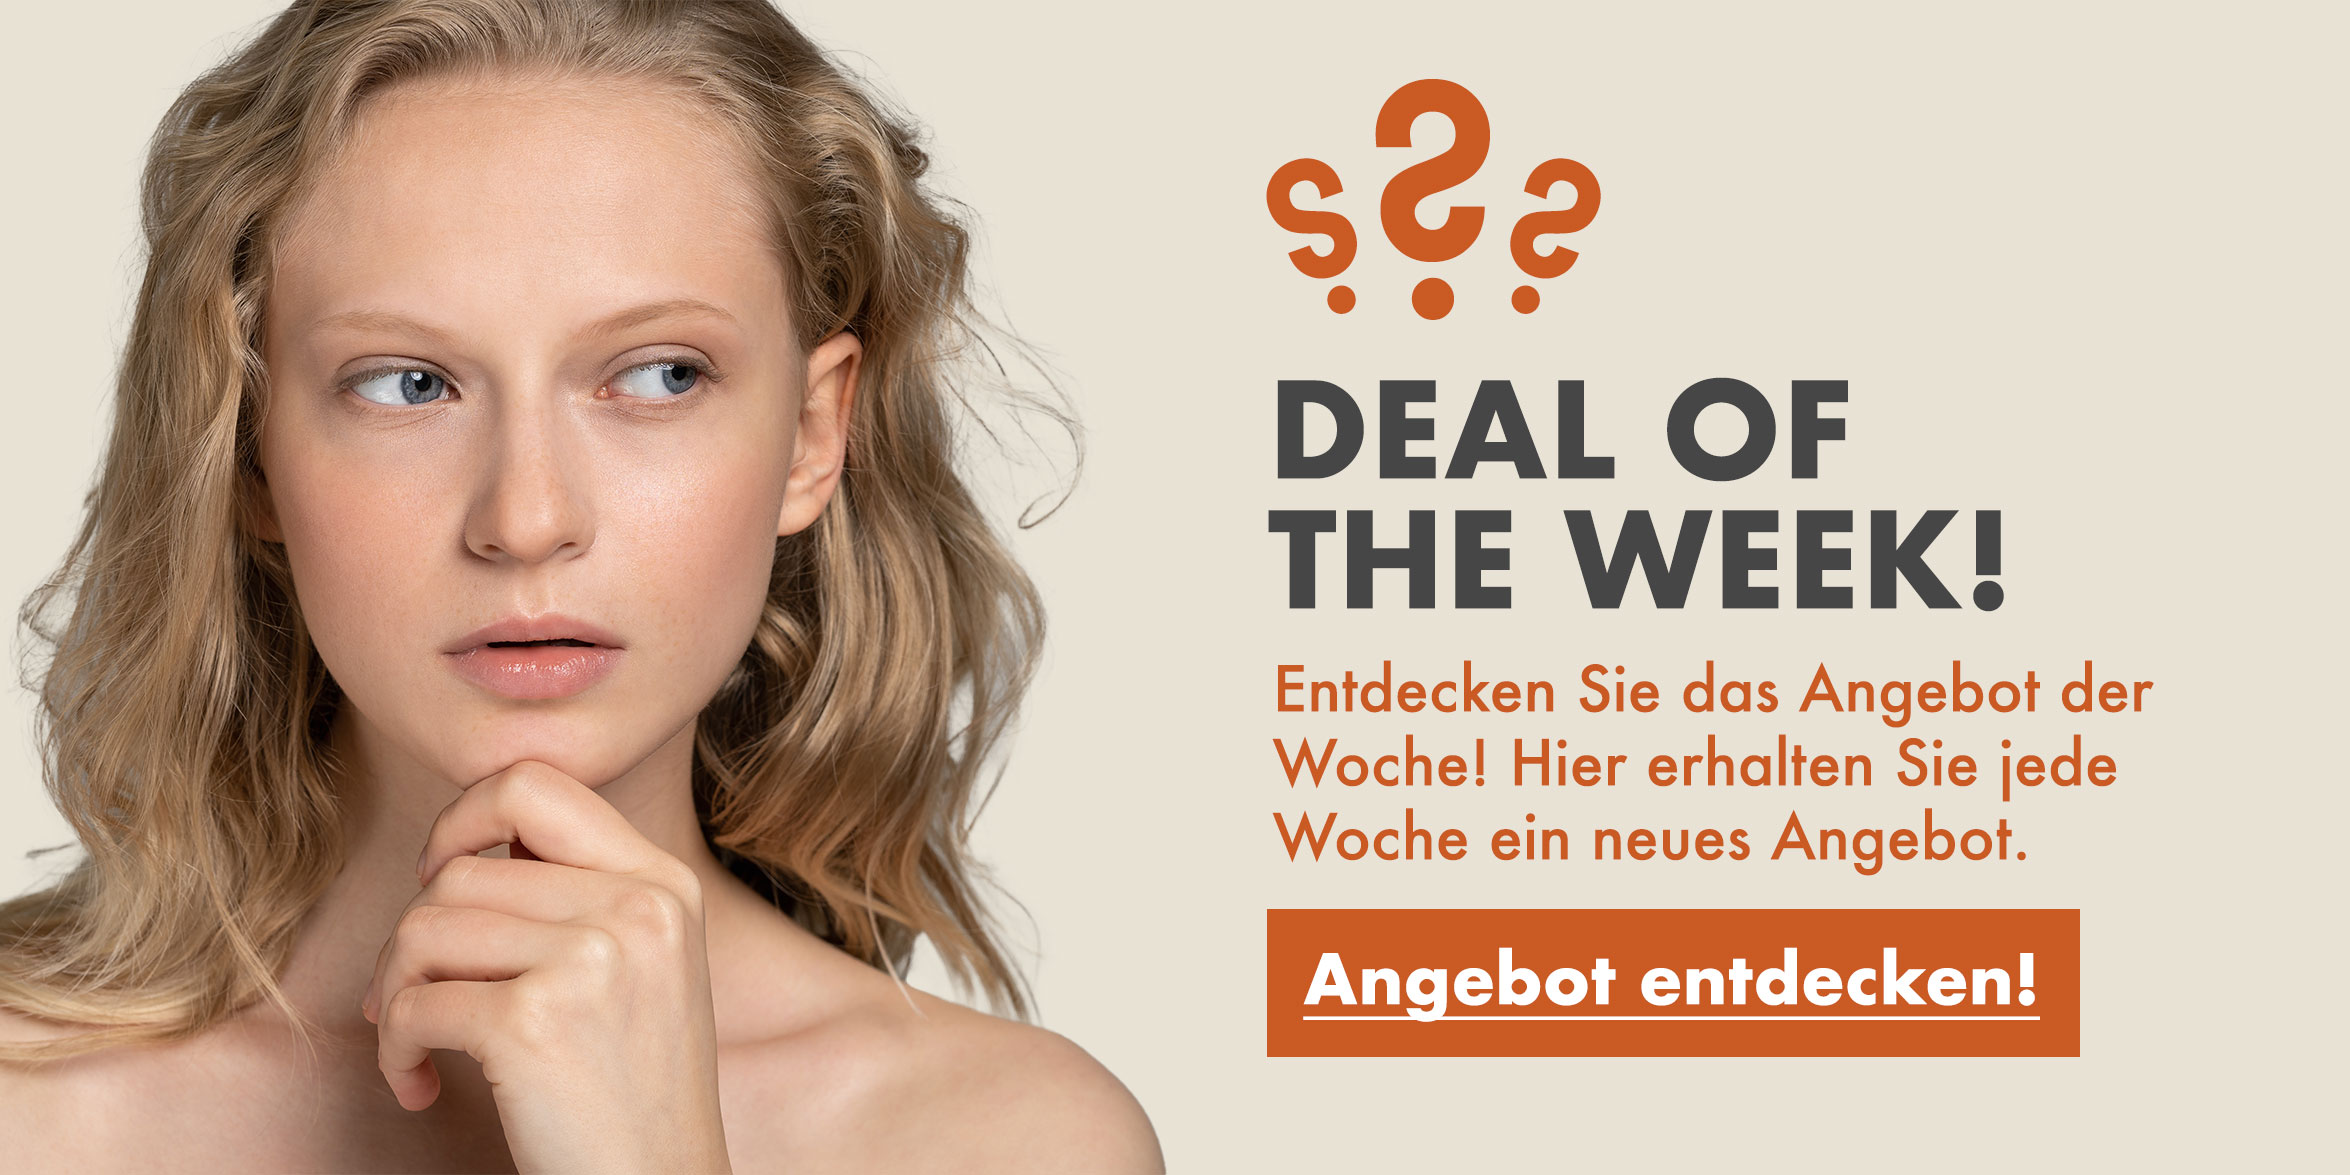 rau-cosmetics_deal-of-the-week_Angebot-der-woche-hautpflege-skincare-gesichtspflege-wirkstoffkosmetik-onlineshop-deutschland_(1)